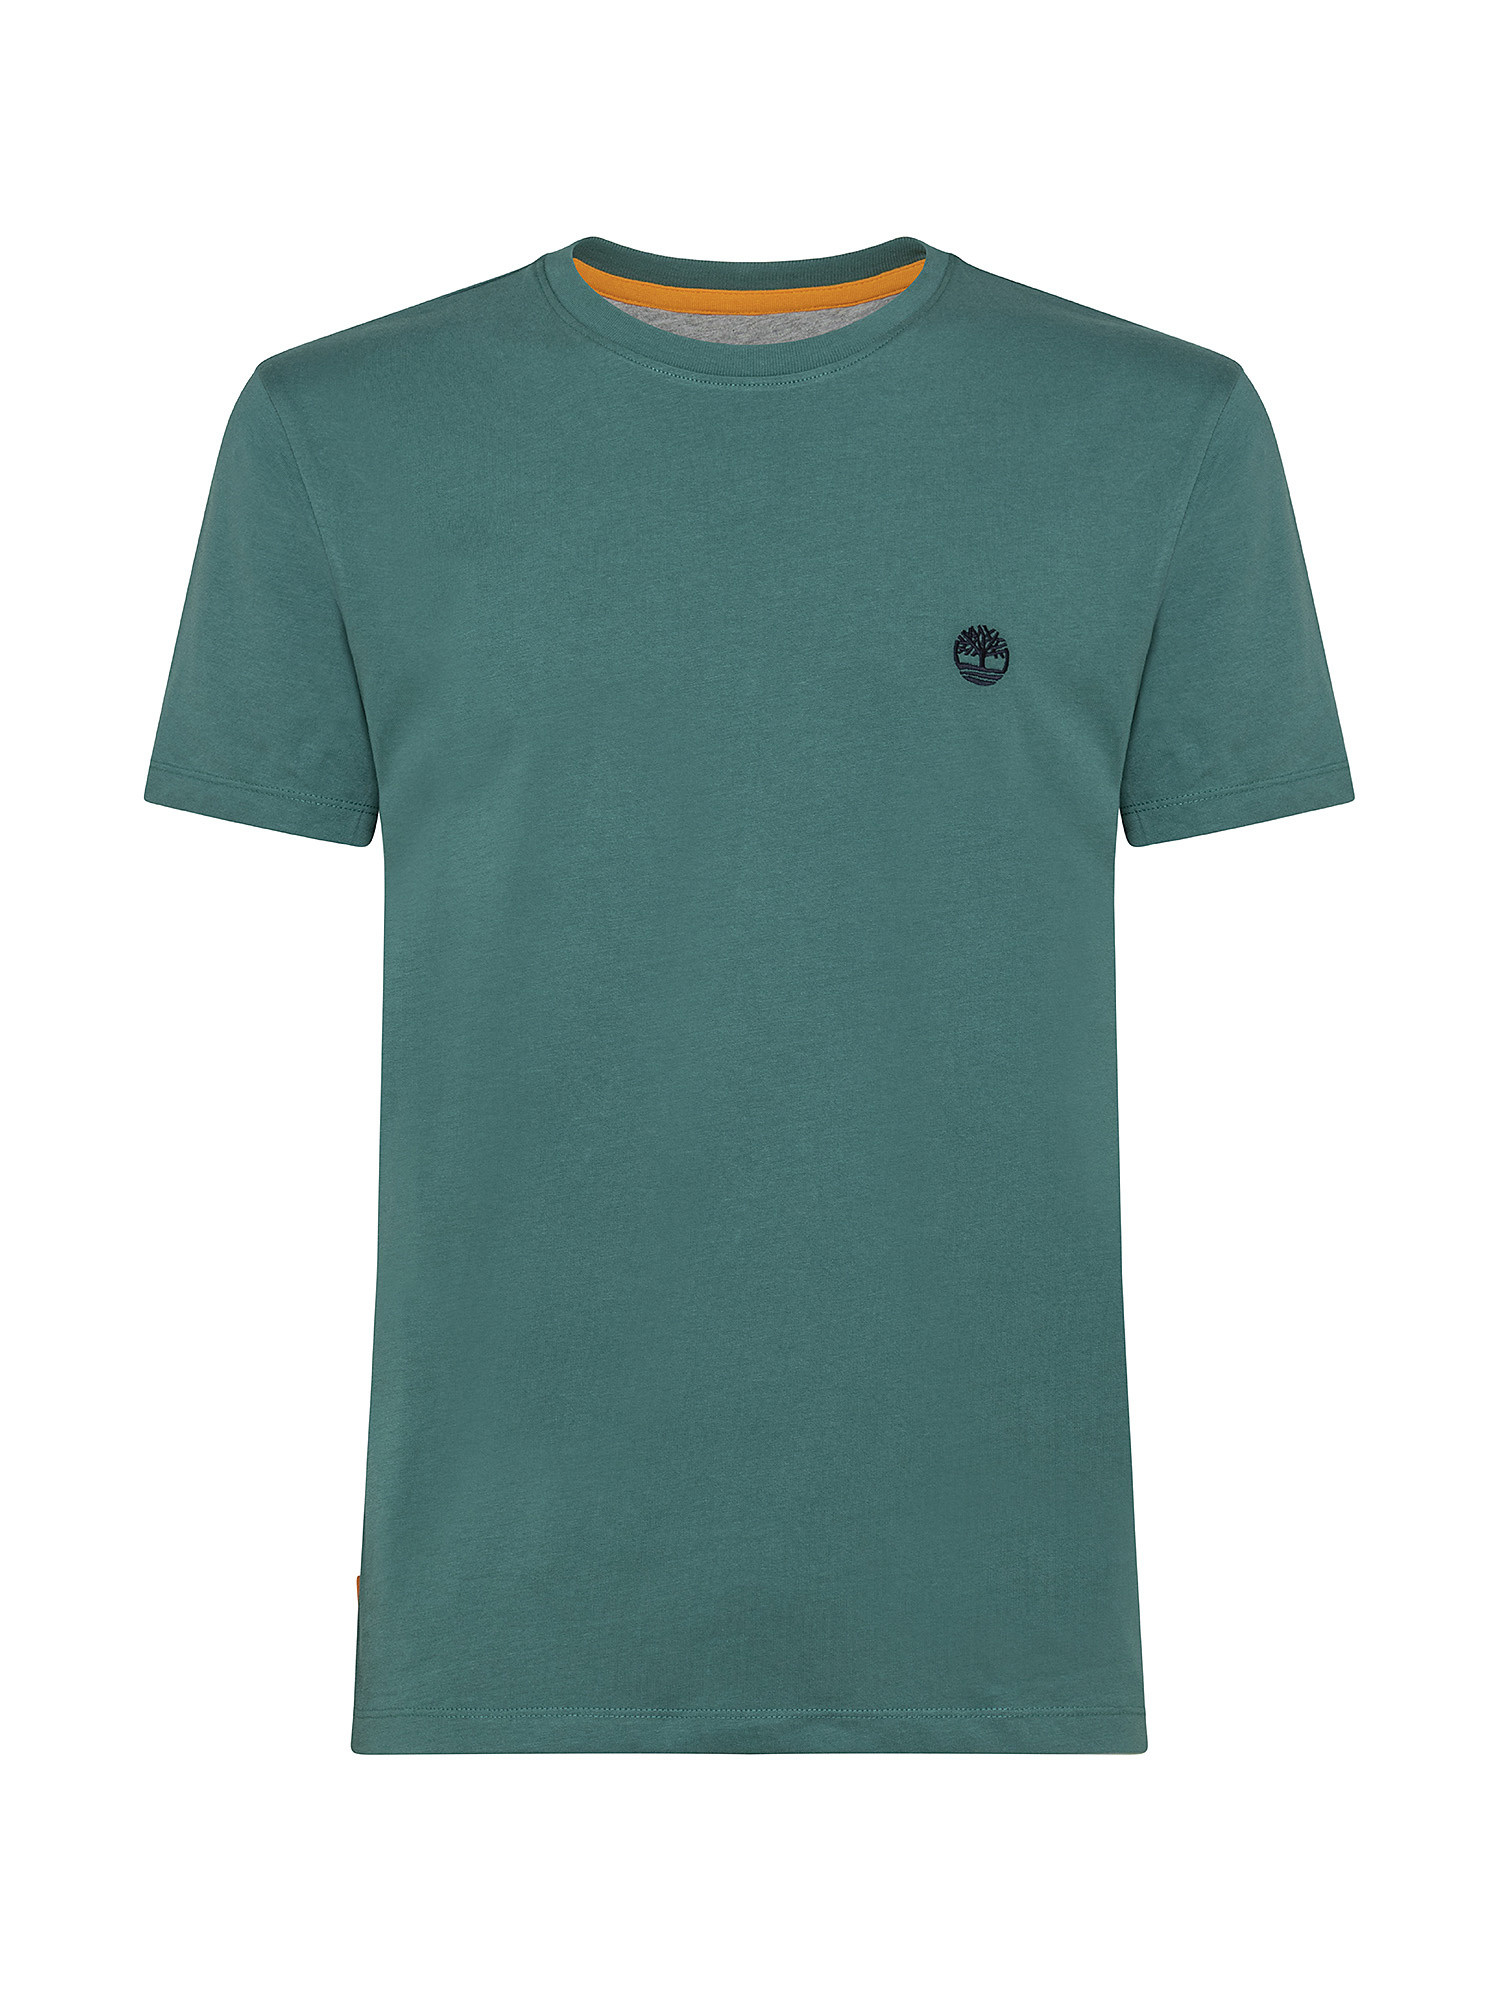 T-shirt da Uomo Dunstan River, Verde, large image number 0